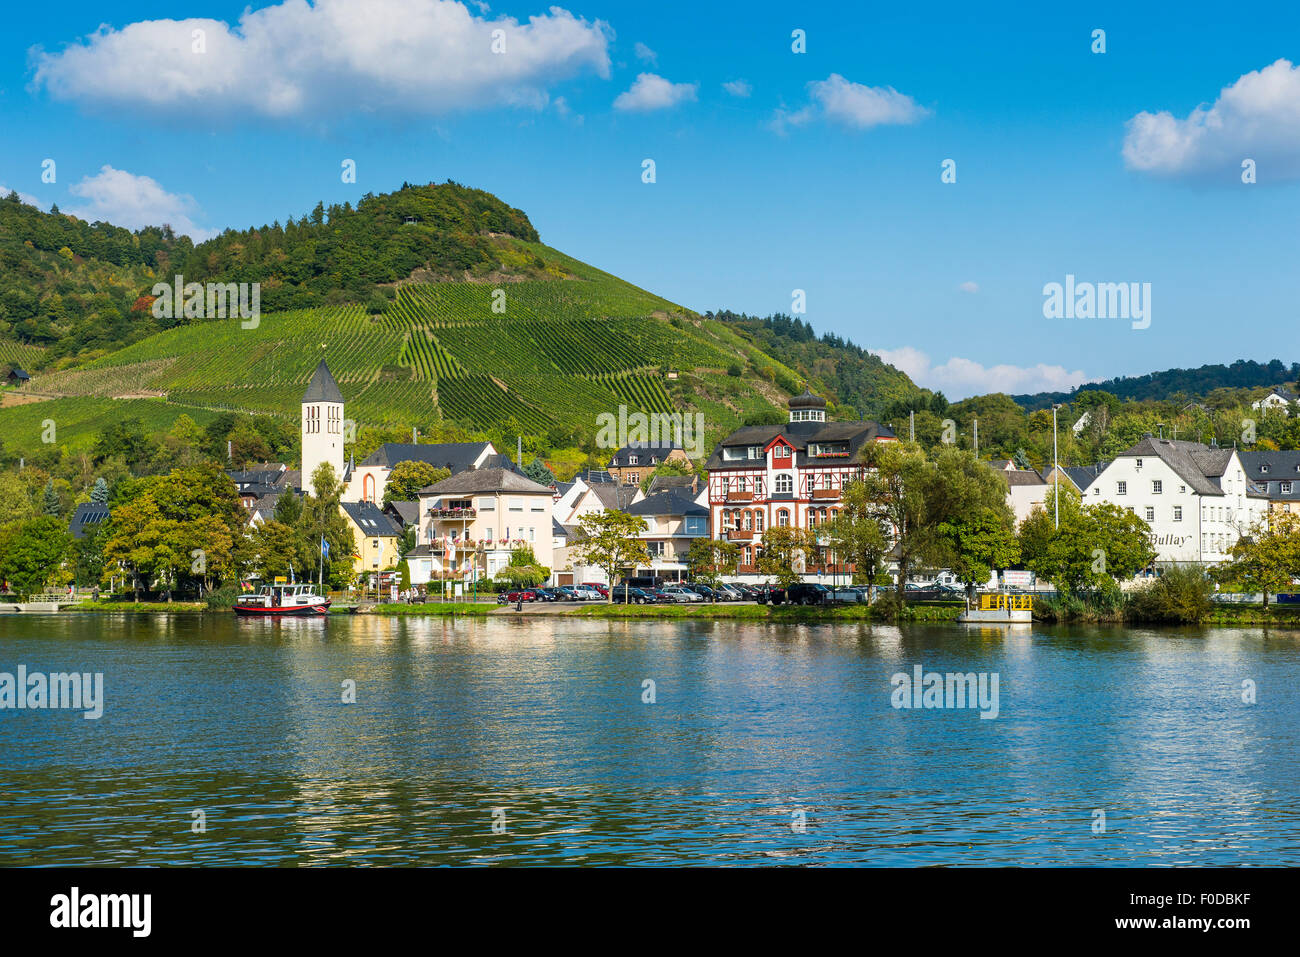 Stadtbild, Alf, Moseltal, Rheinland-Pfalz, Deutschland Stockfoto